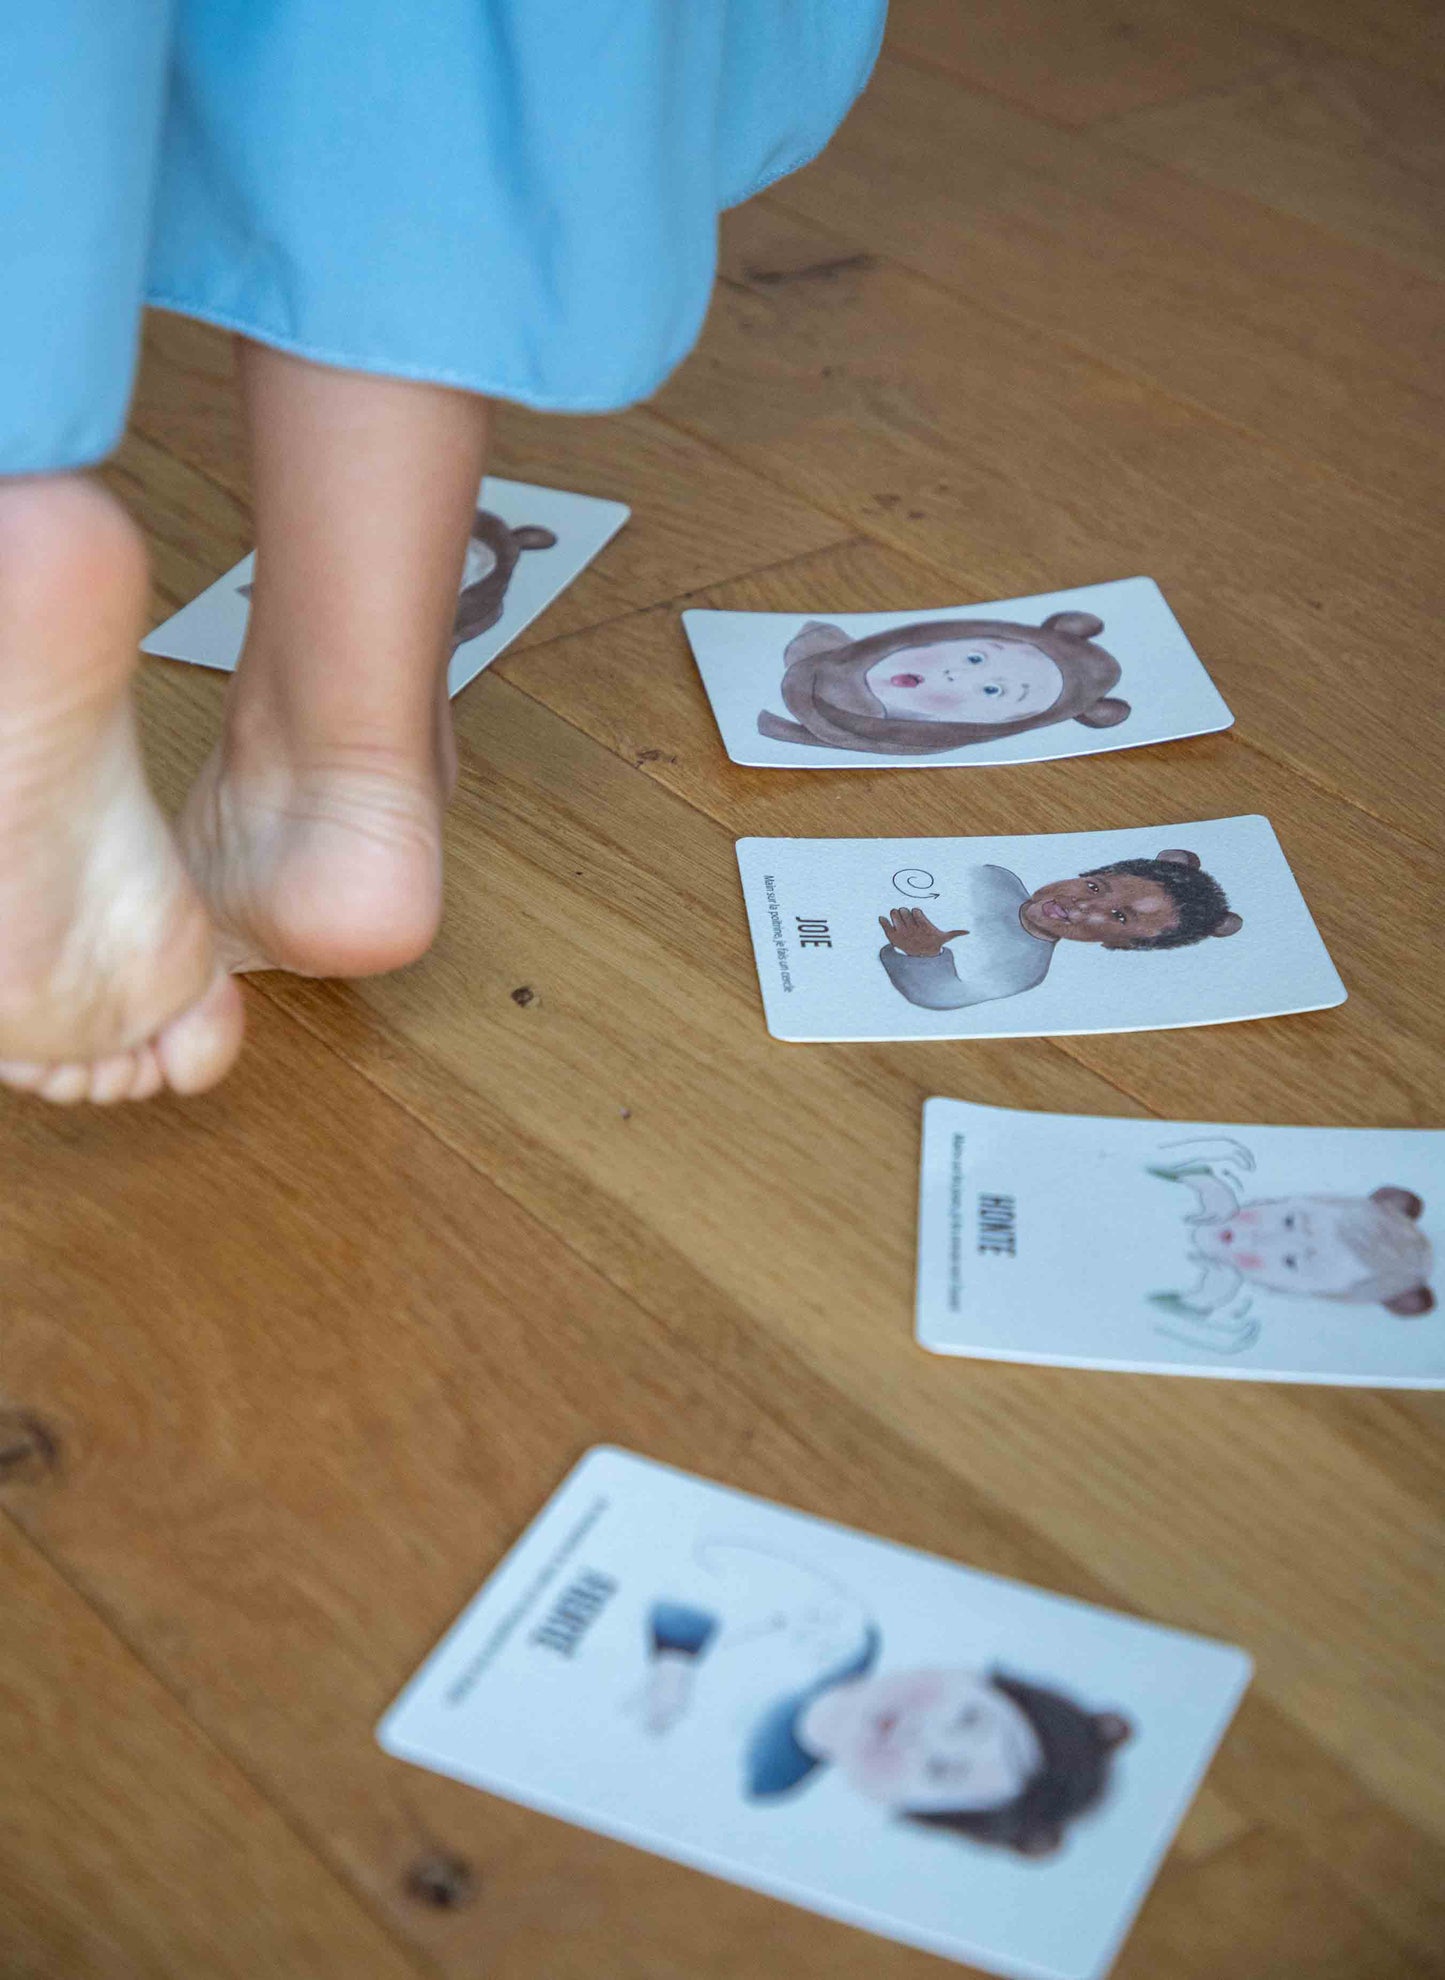 Cartes "Signer avec Bébé les Émotions" posées sur le parquet, laissant apparaître les pieds nus d'un enfant.